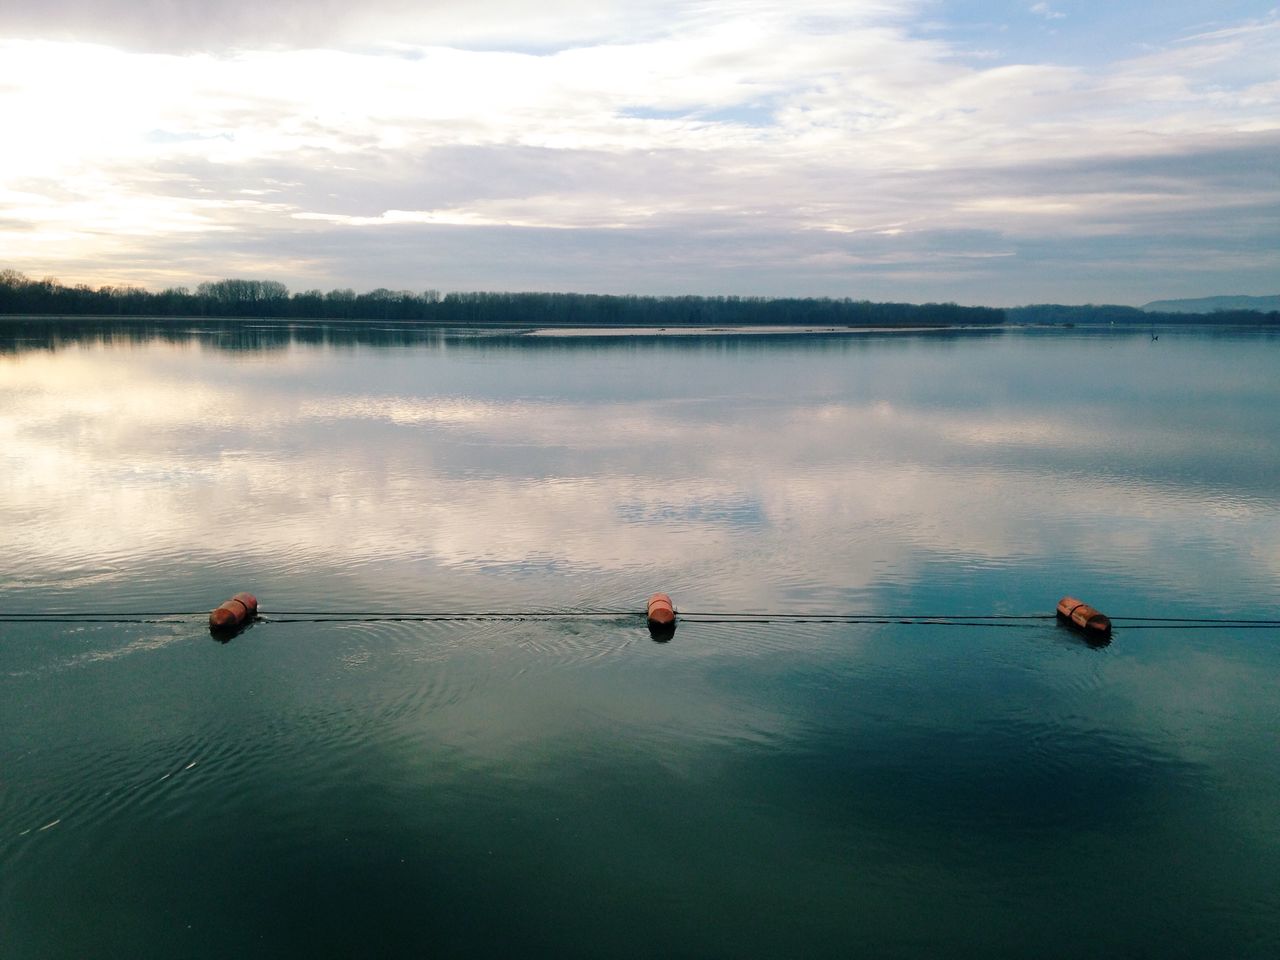 Buoys in still lake